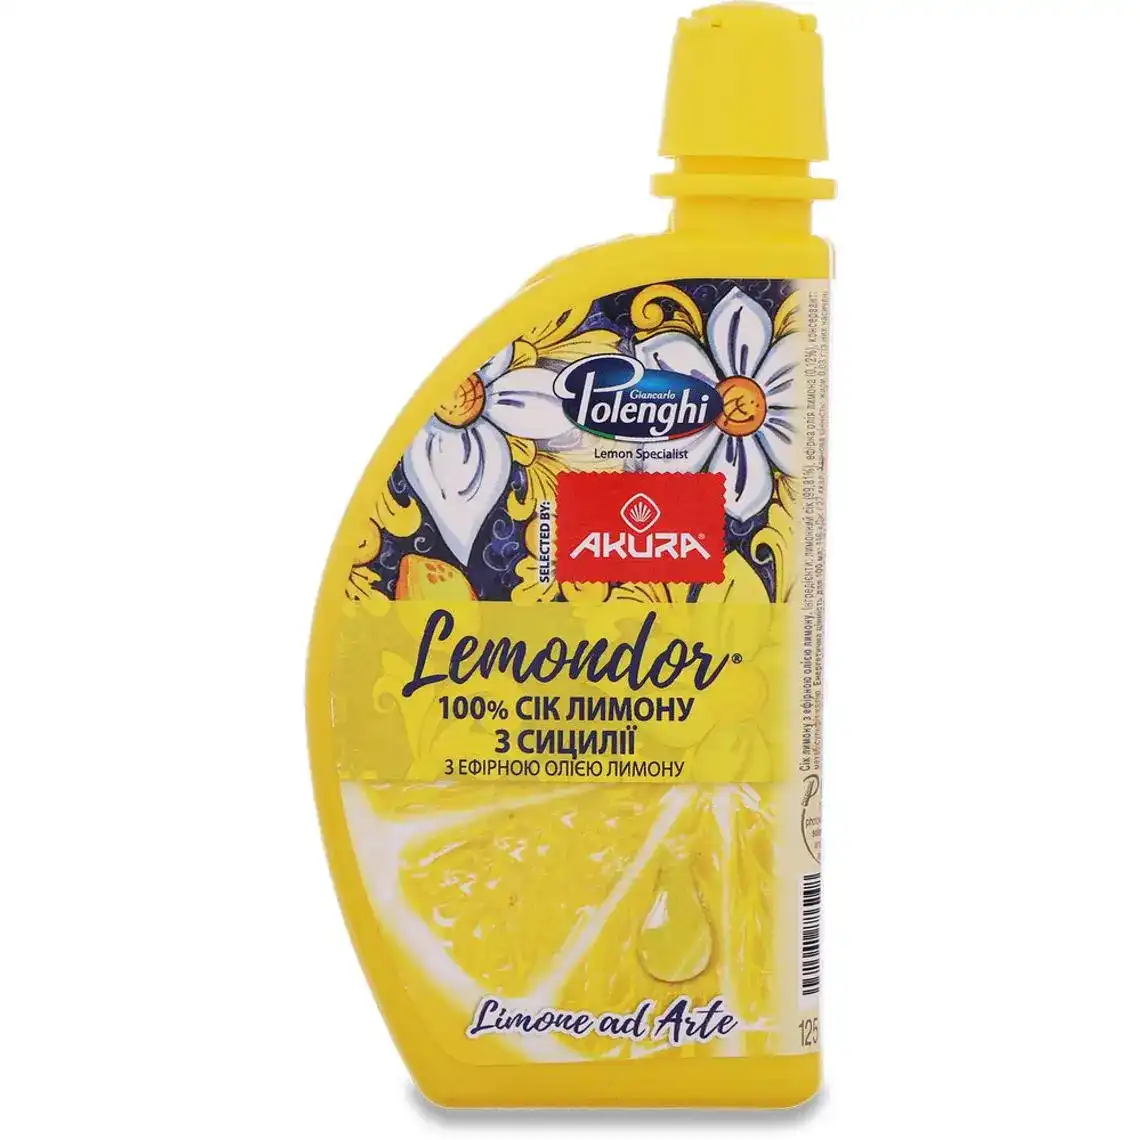 Сік лимону з ефірною олією лимону Akura 125мл